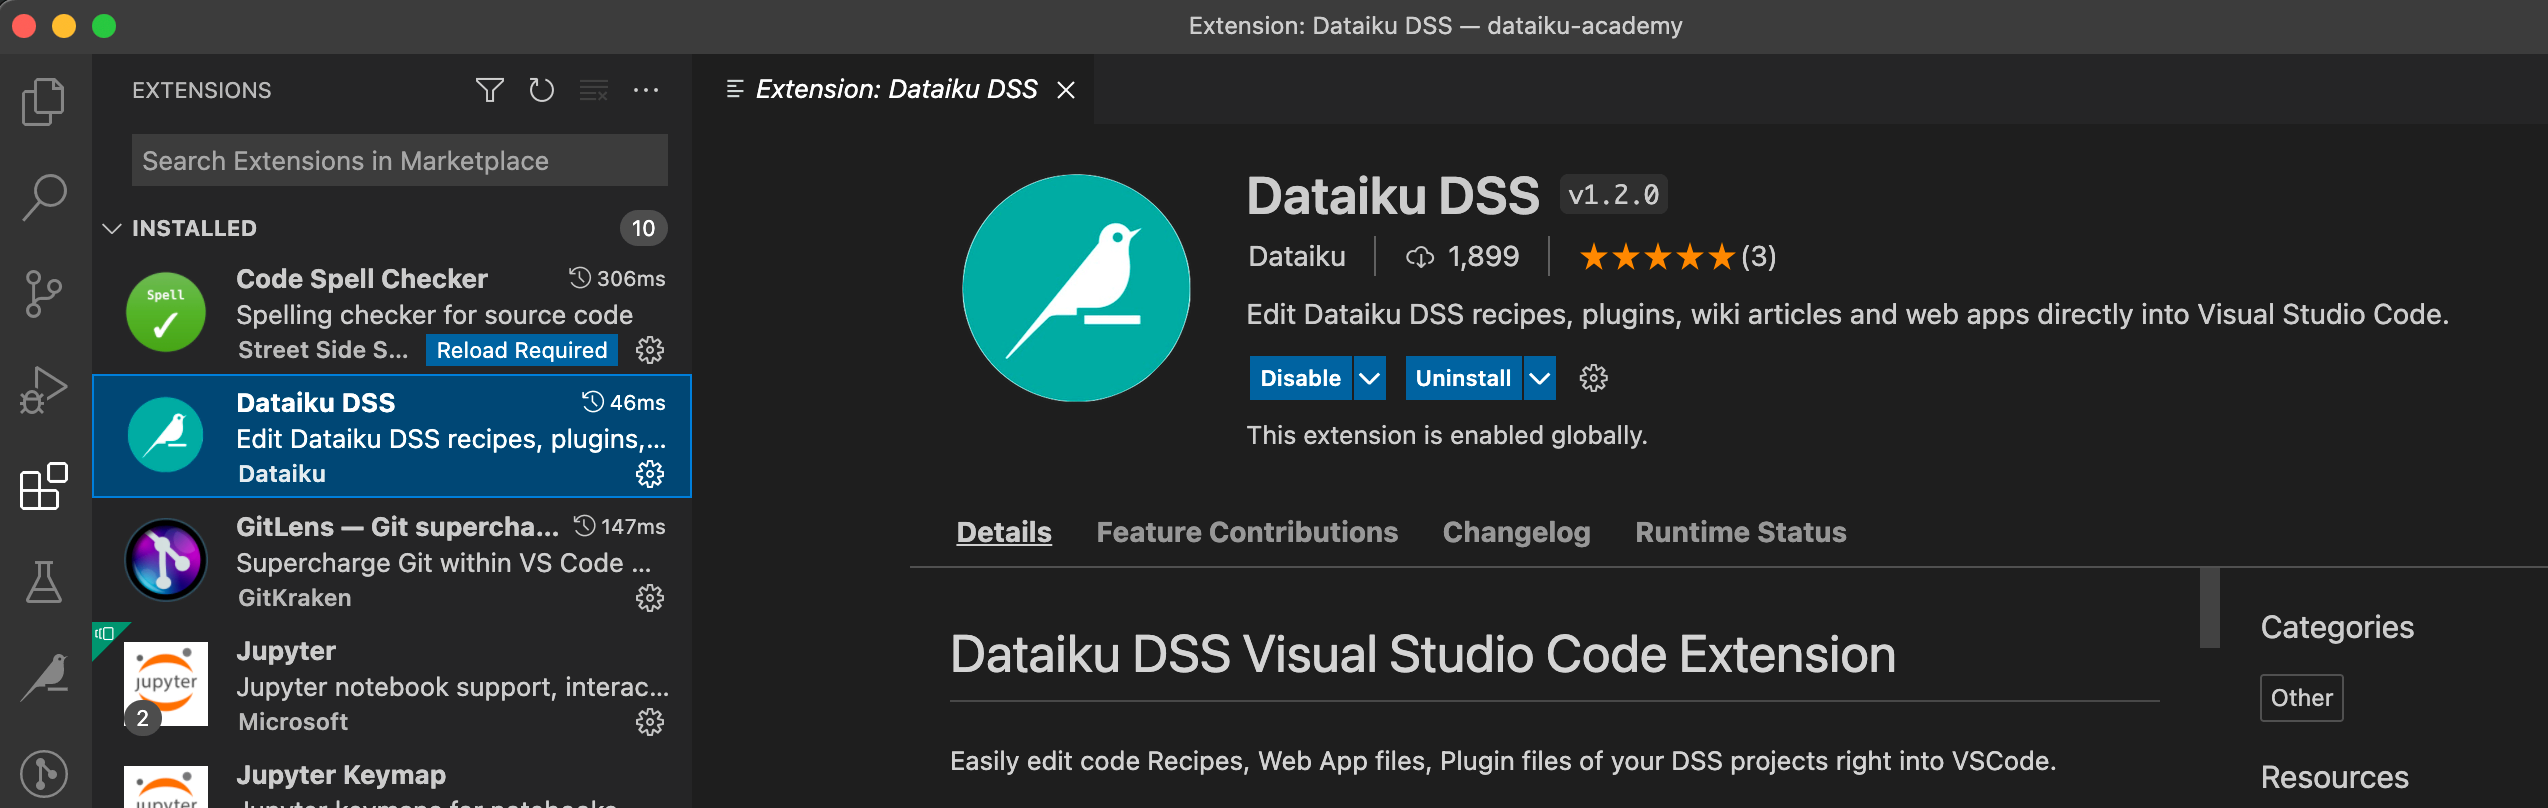 Screenshot of Dataiku extension in VS Code.